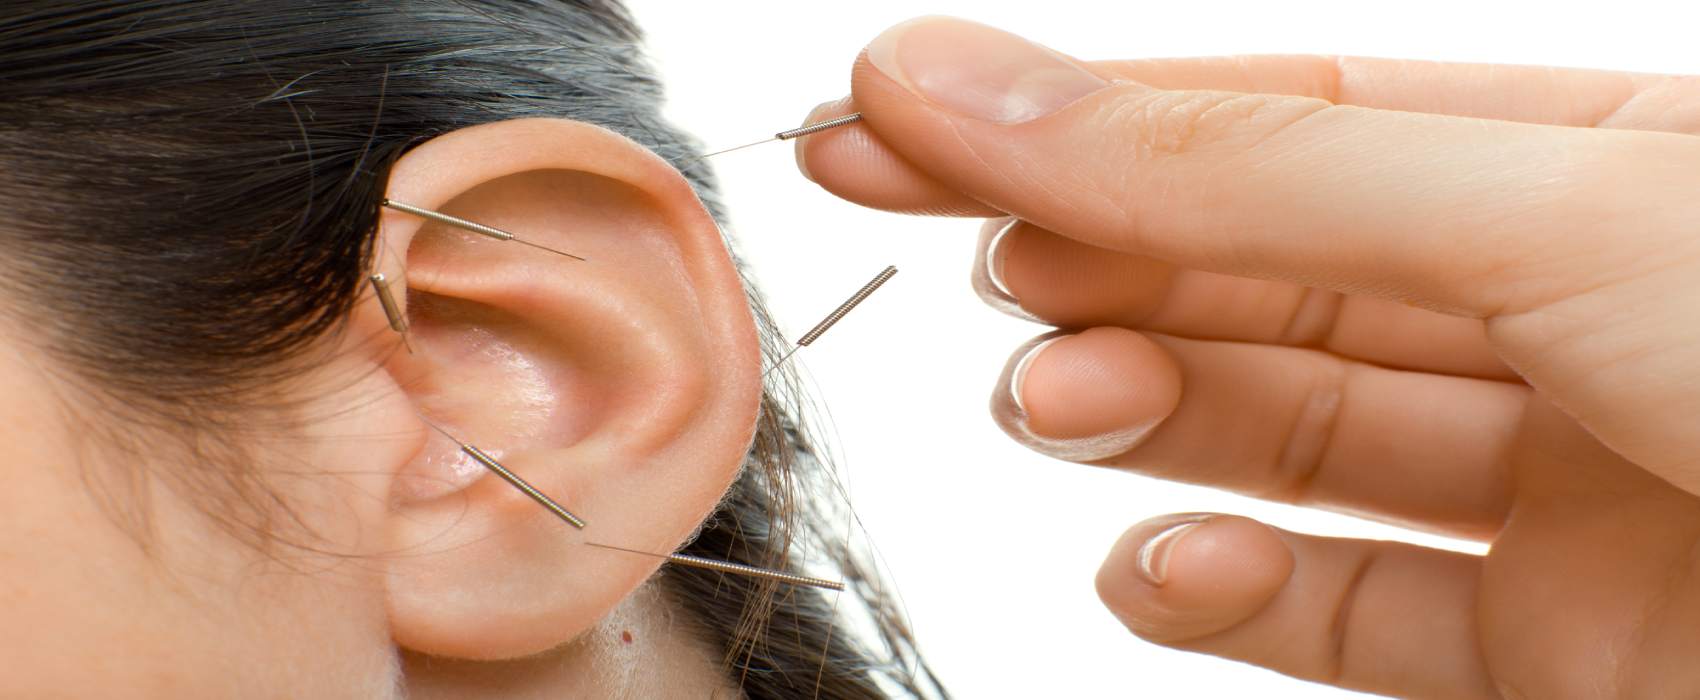 درمان عفونت گوش با طب سنتی